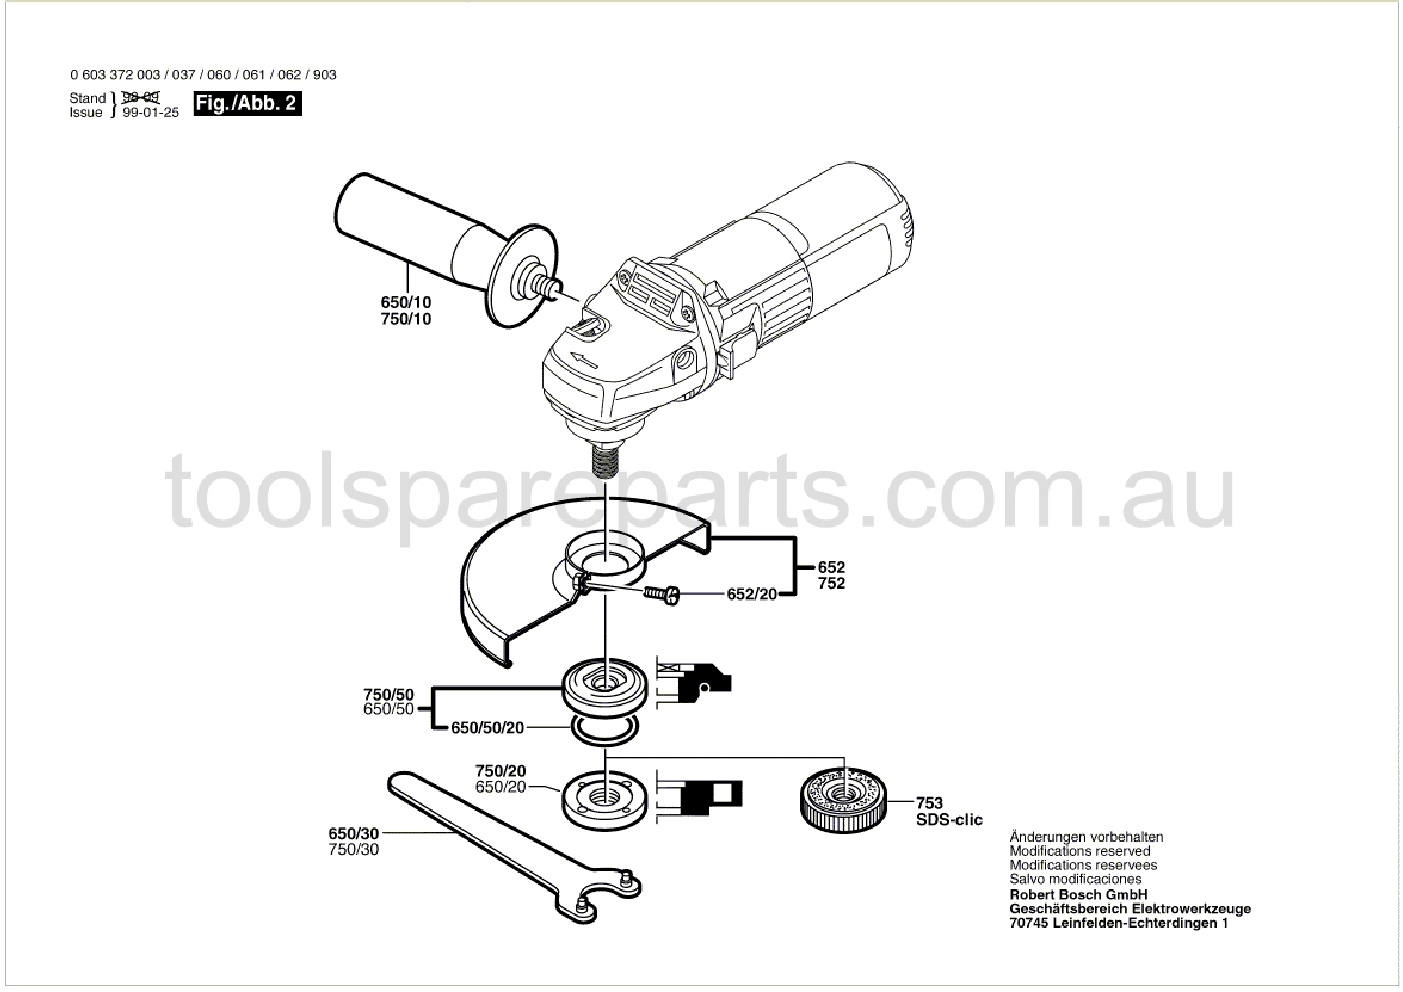 Bosch PWS 6-100 0603372037  Diagram 2